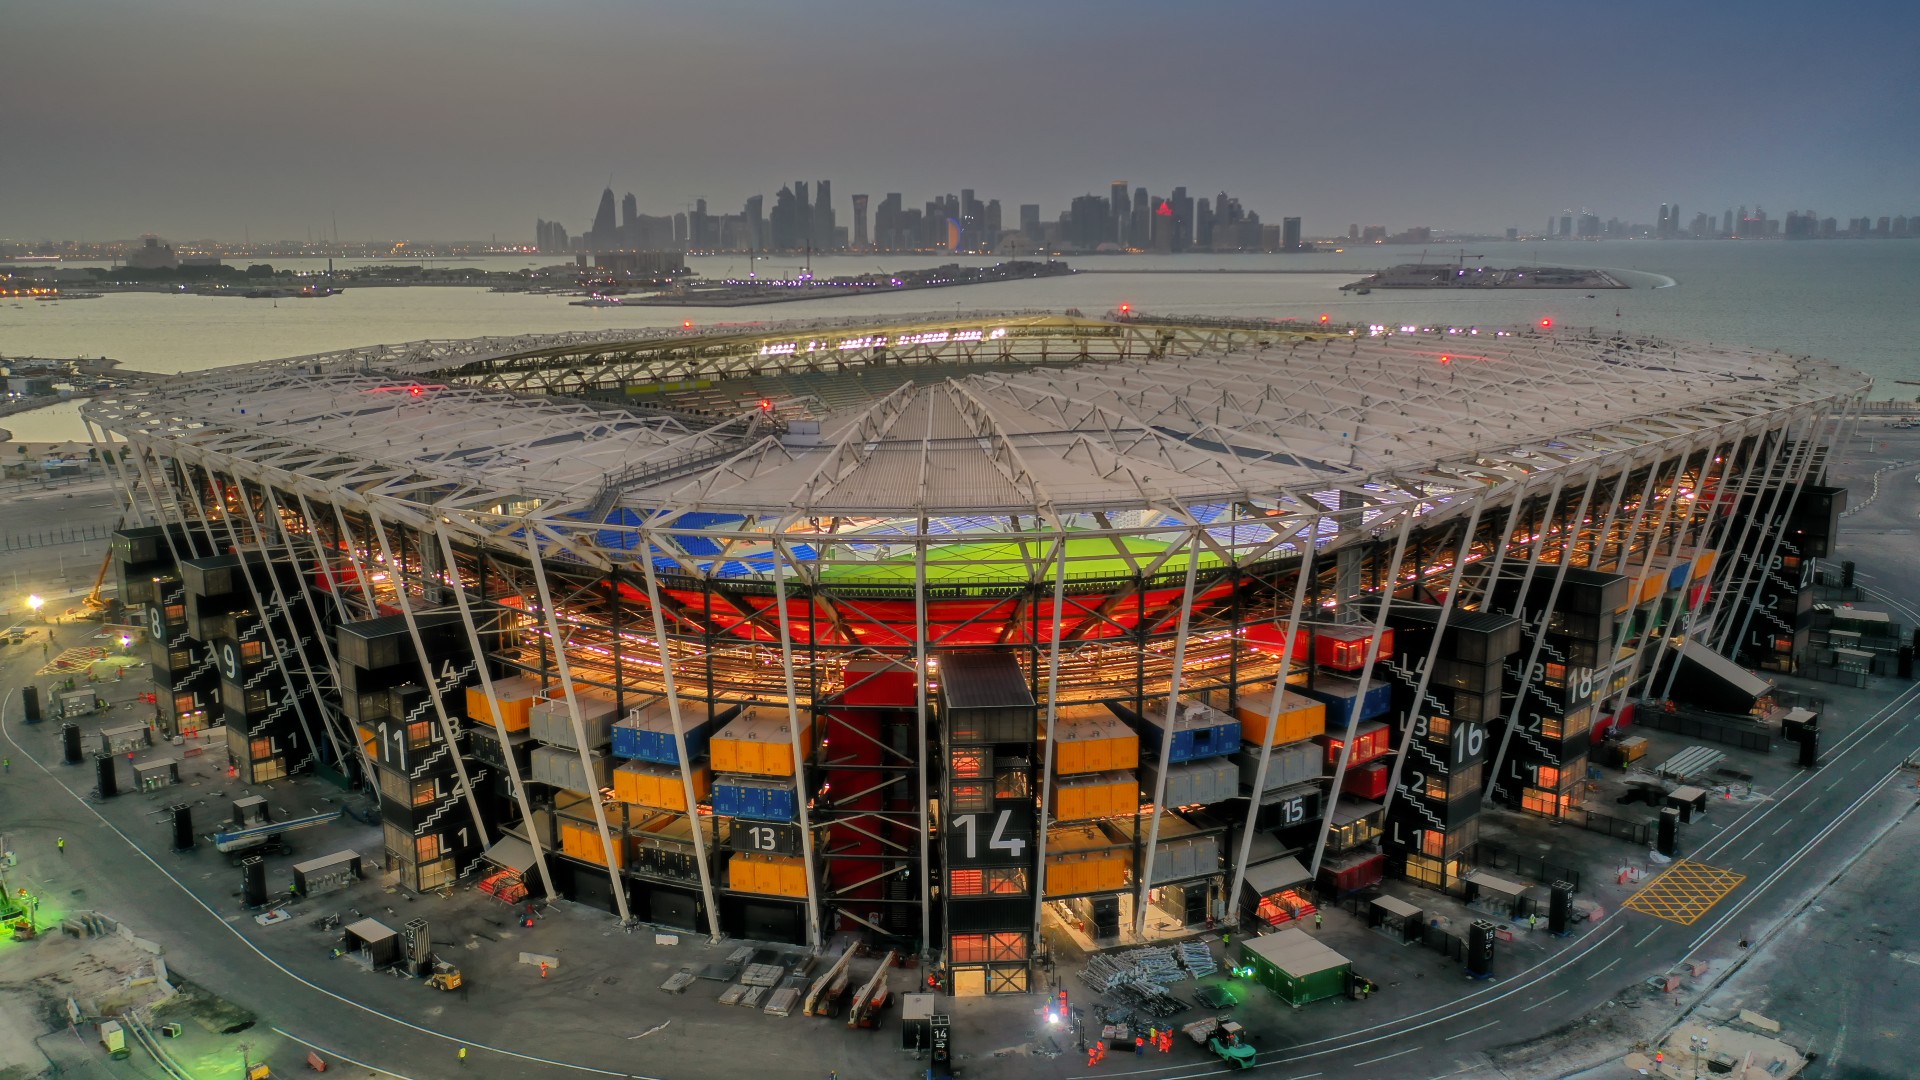 Qatar World Cup Stadium 974 (Courtesy Qatar 2022)